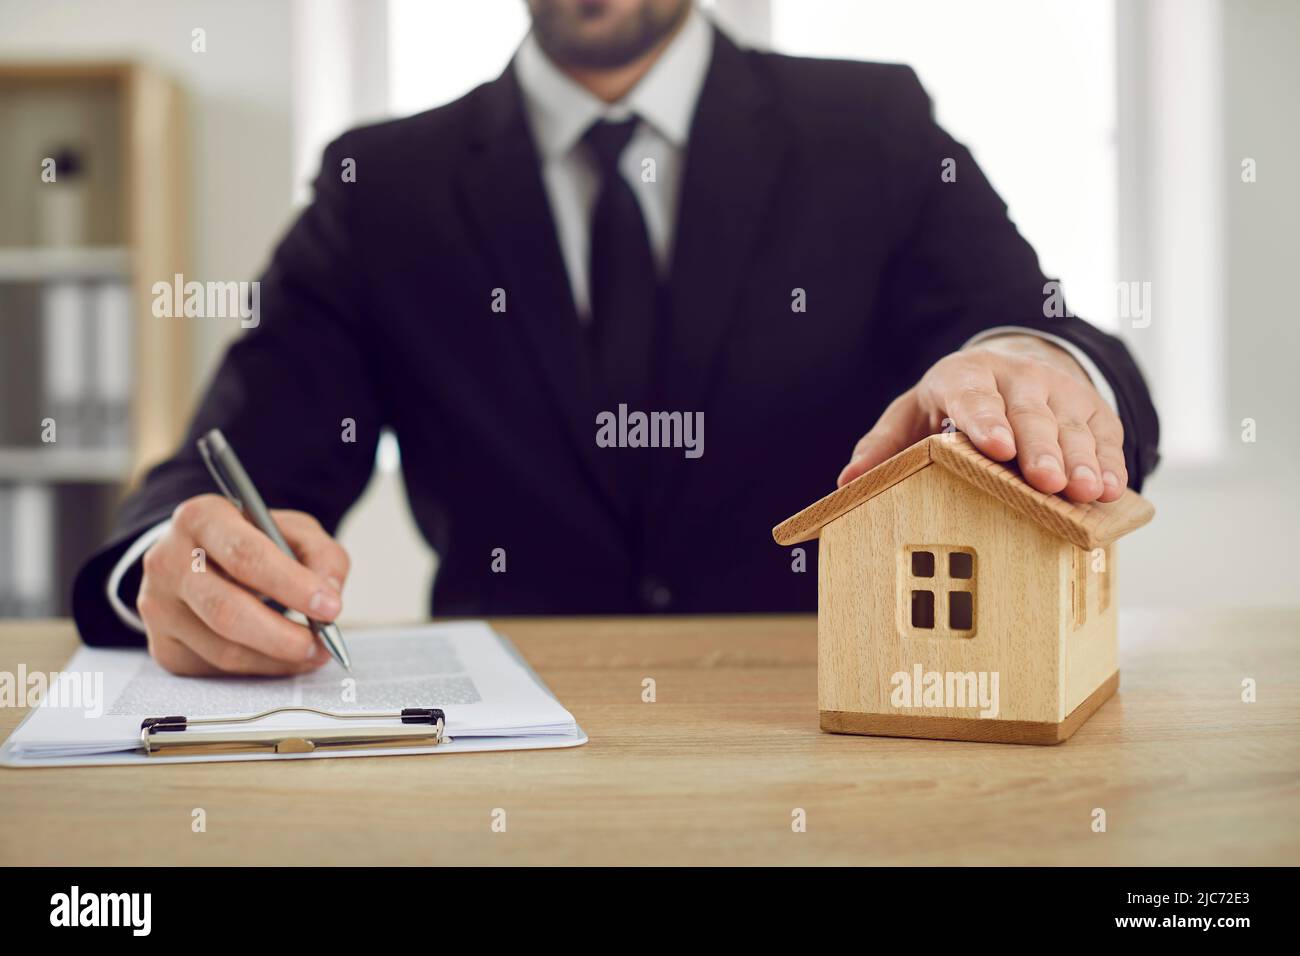 L'uomo all'ufficio dell'agente immobiliare mette la sua mano sulla casa del giocattolo e firma l'accordo ipotecario Foto Stock